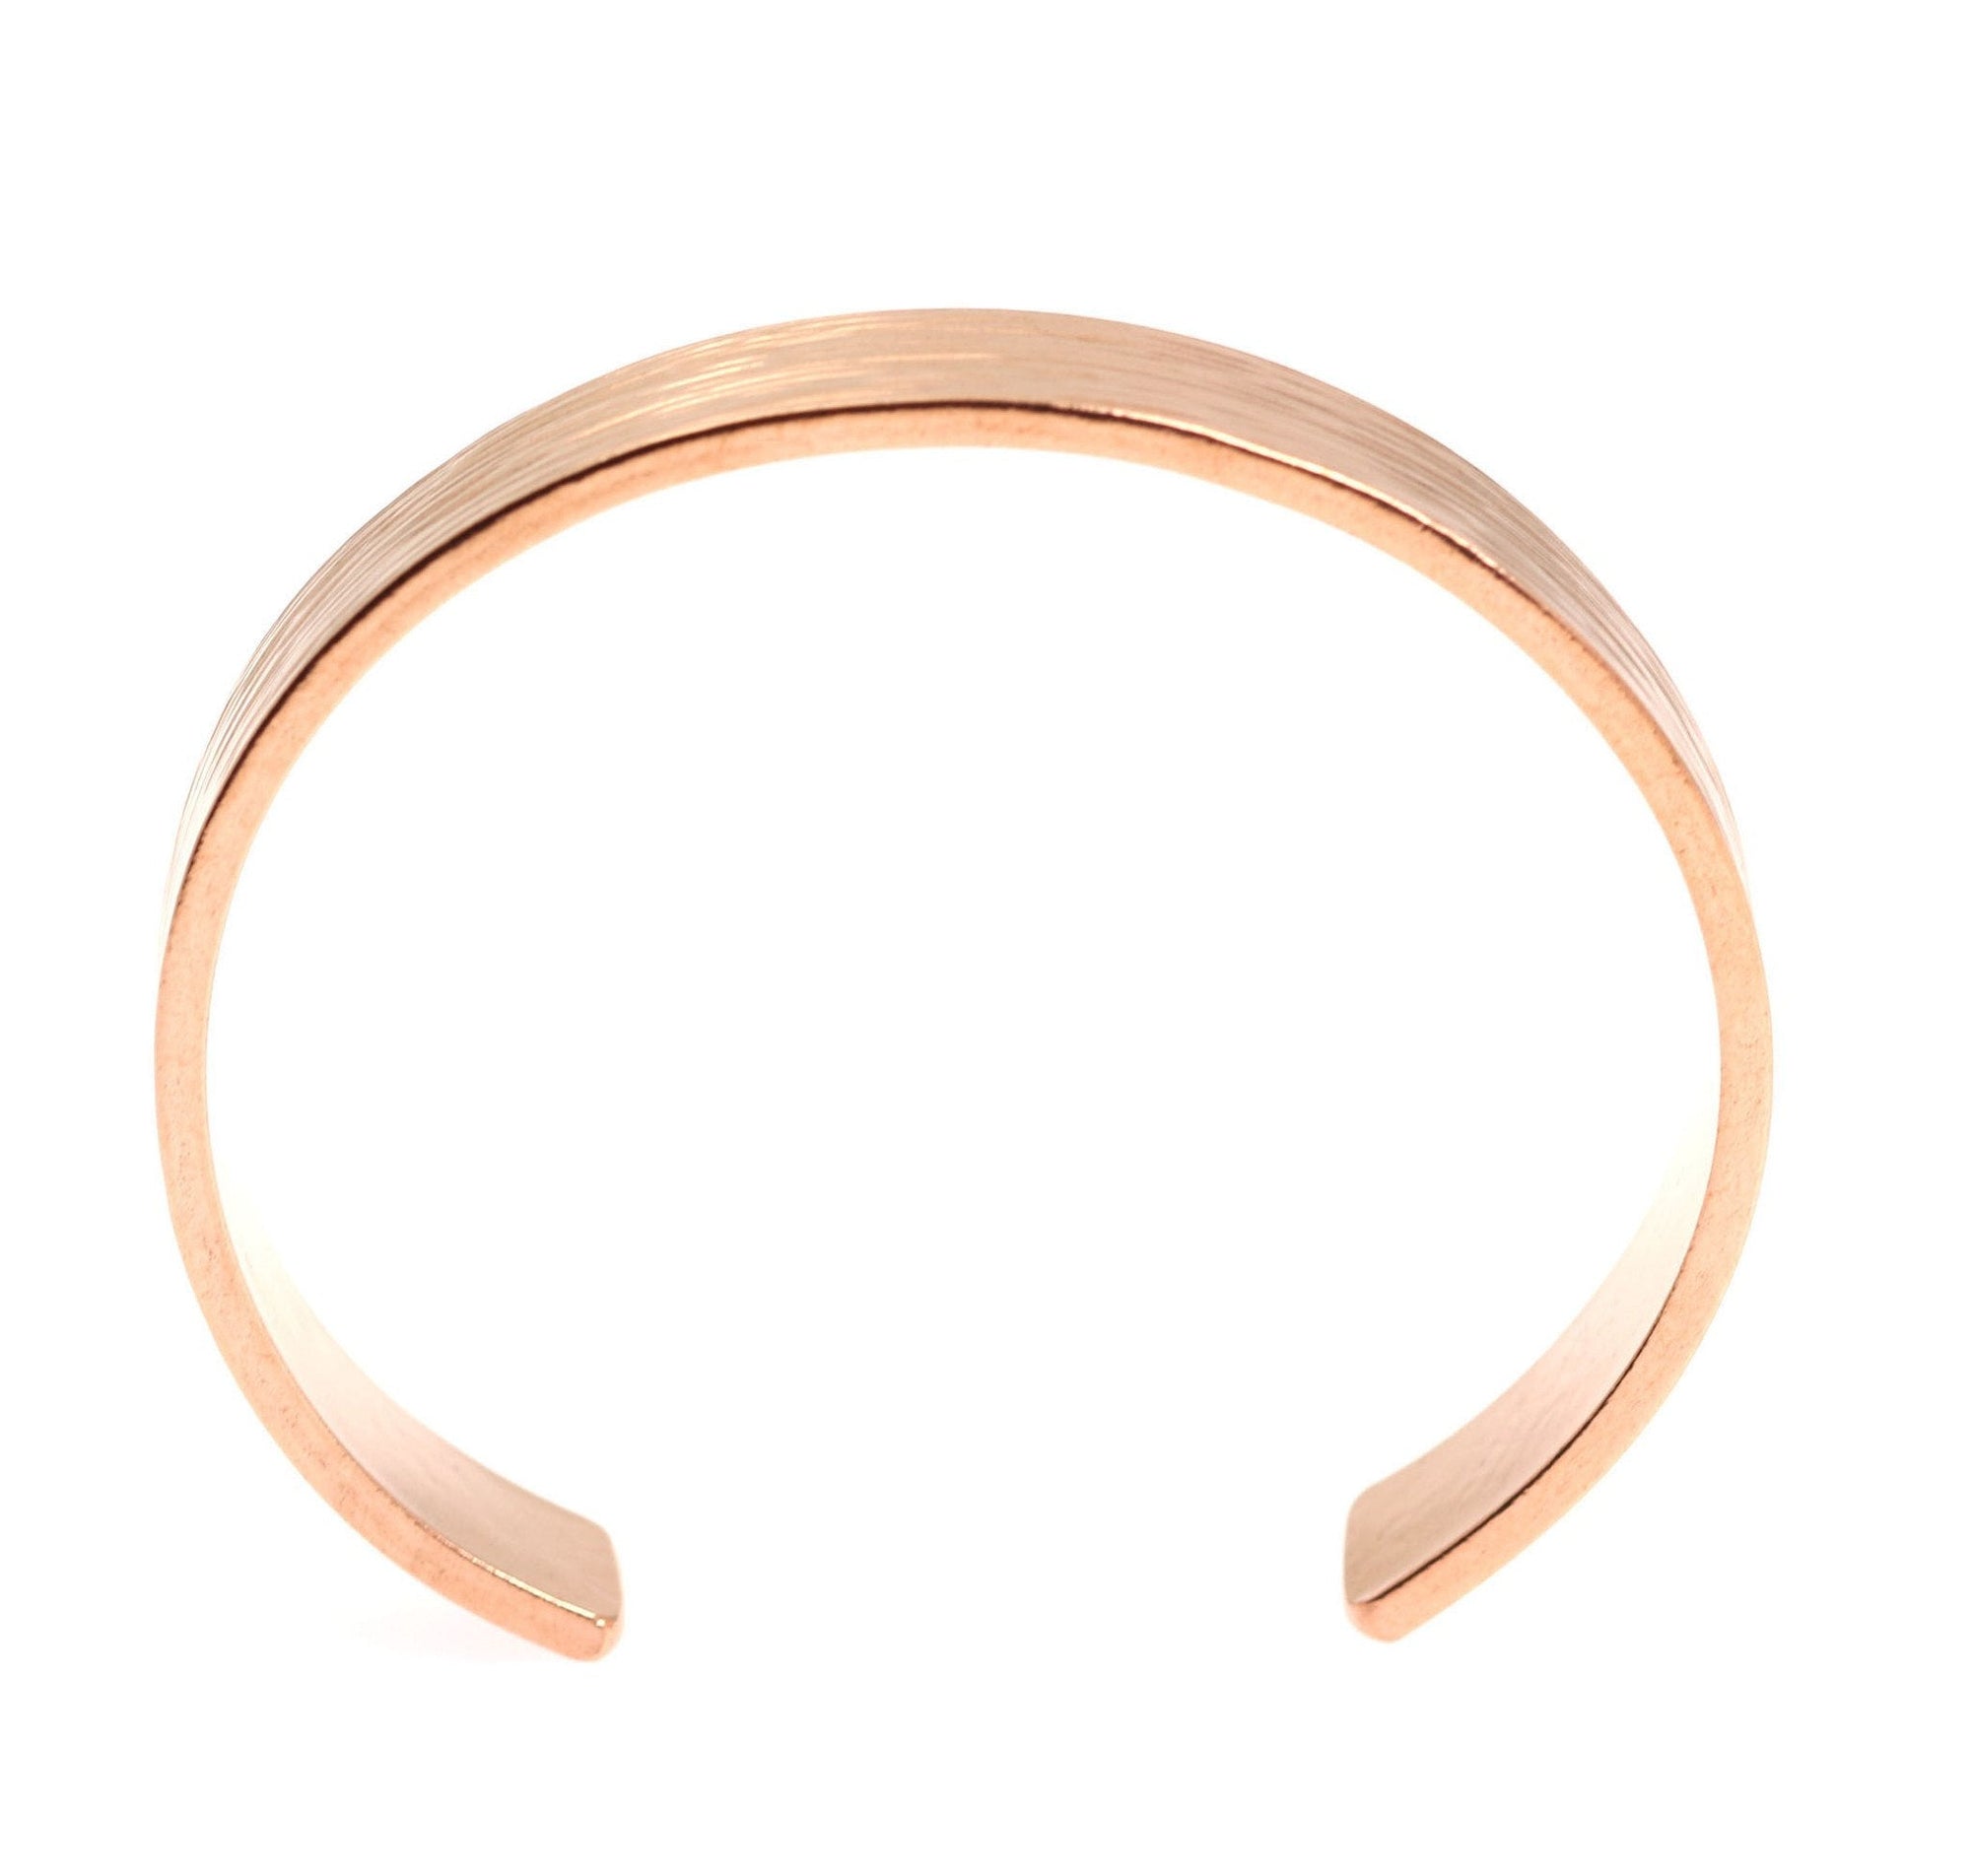 Shape of 10mm Wide Bark Copper Cuff Bracelet 